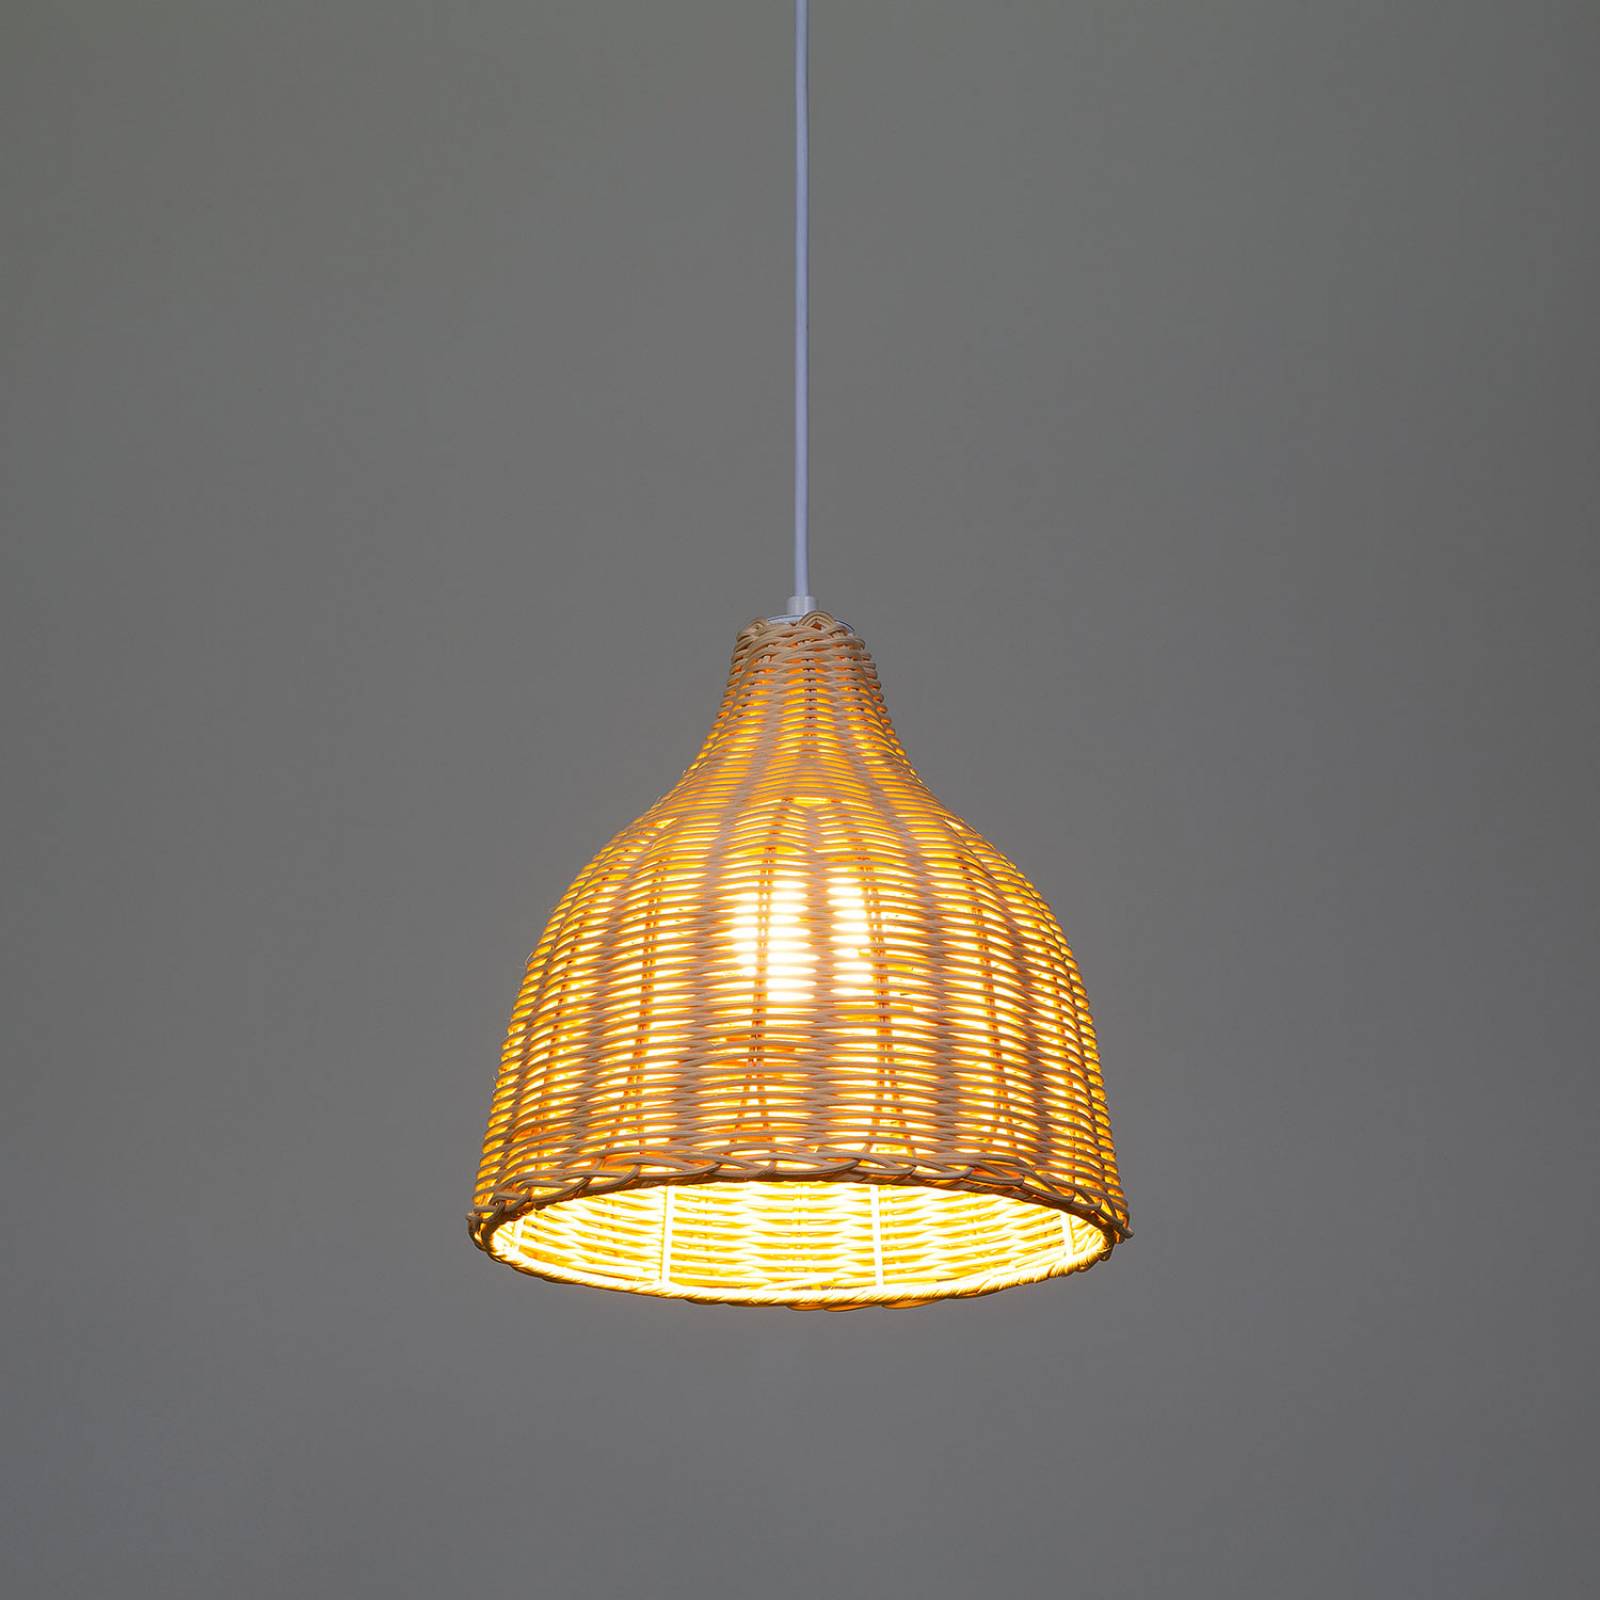 Lámpara de bambú colgante, estilo rustico, mimbre, ideal para salas y restaurantes, luz cálida DL-2404.MB